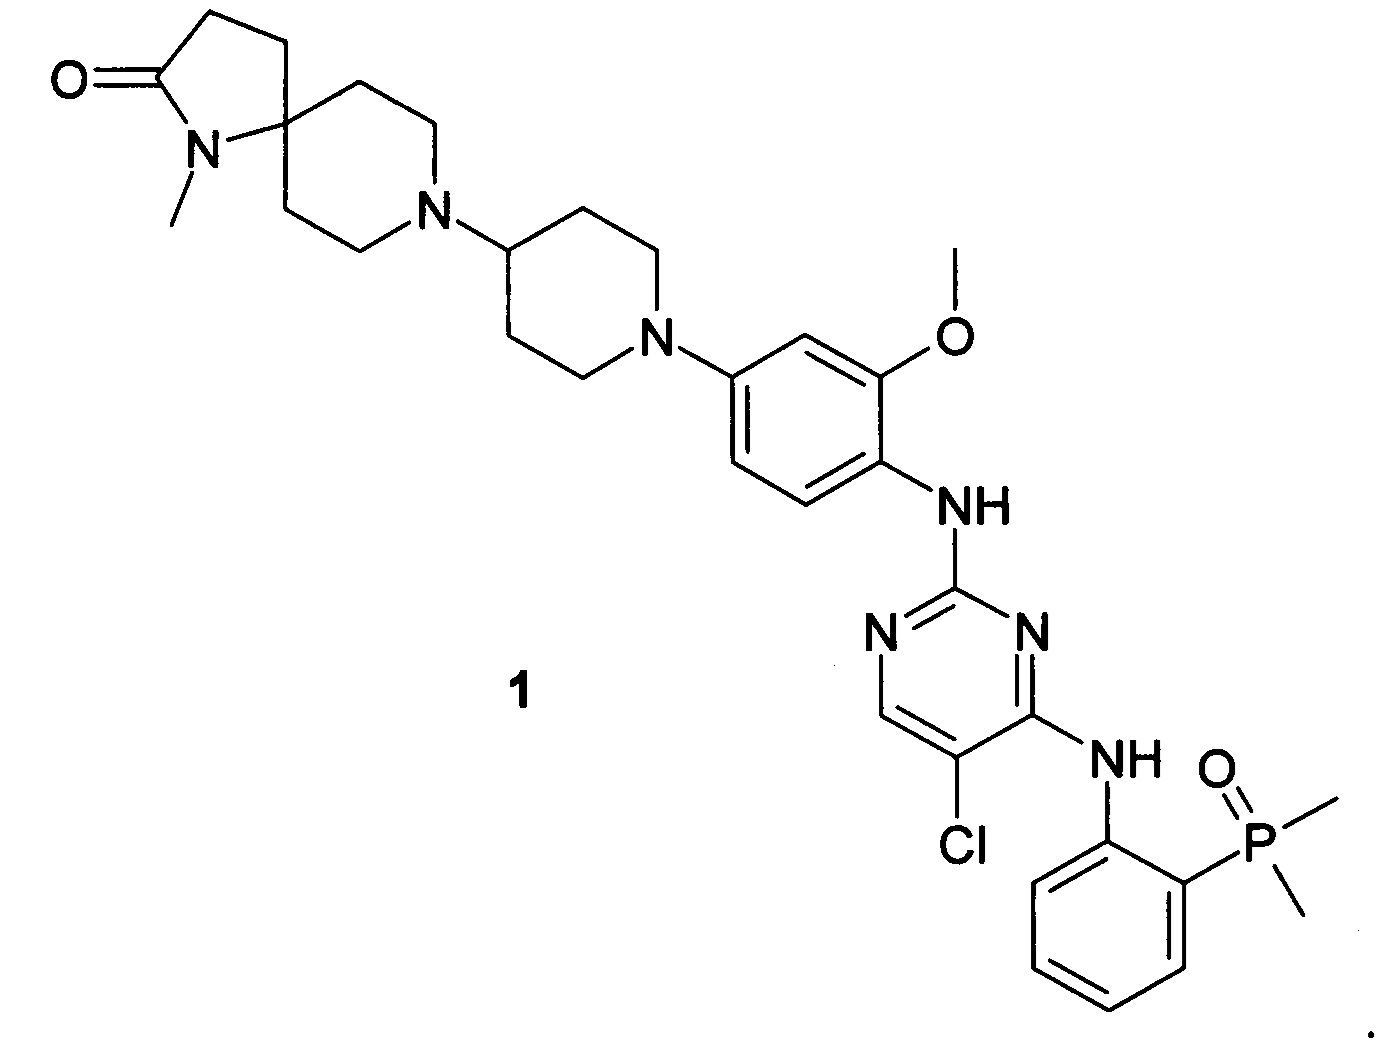 8-(1-{ 4-{ (5-Хлор-4-{ (2-(диметилфосфорил)фенил)амино} пиримидин-2-ил)амино)-3-метоксифенил} пиперидин-4-ил)-1-метил-1,8-диазаспиро(4.5)декан-2-он и его фармацевтически приемлемые соли в качестве модулятора ALK и EGER, предназначенные для лечения рака